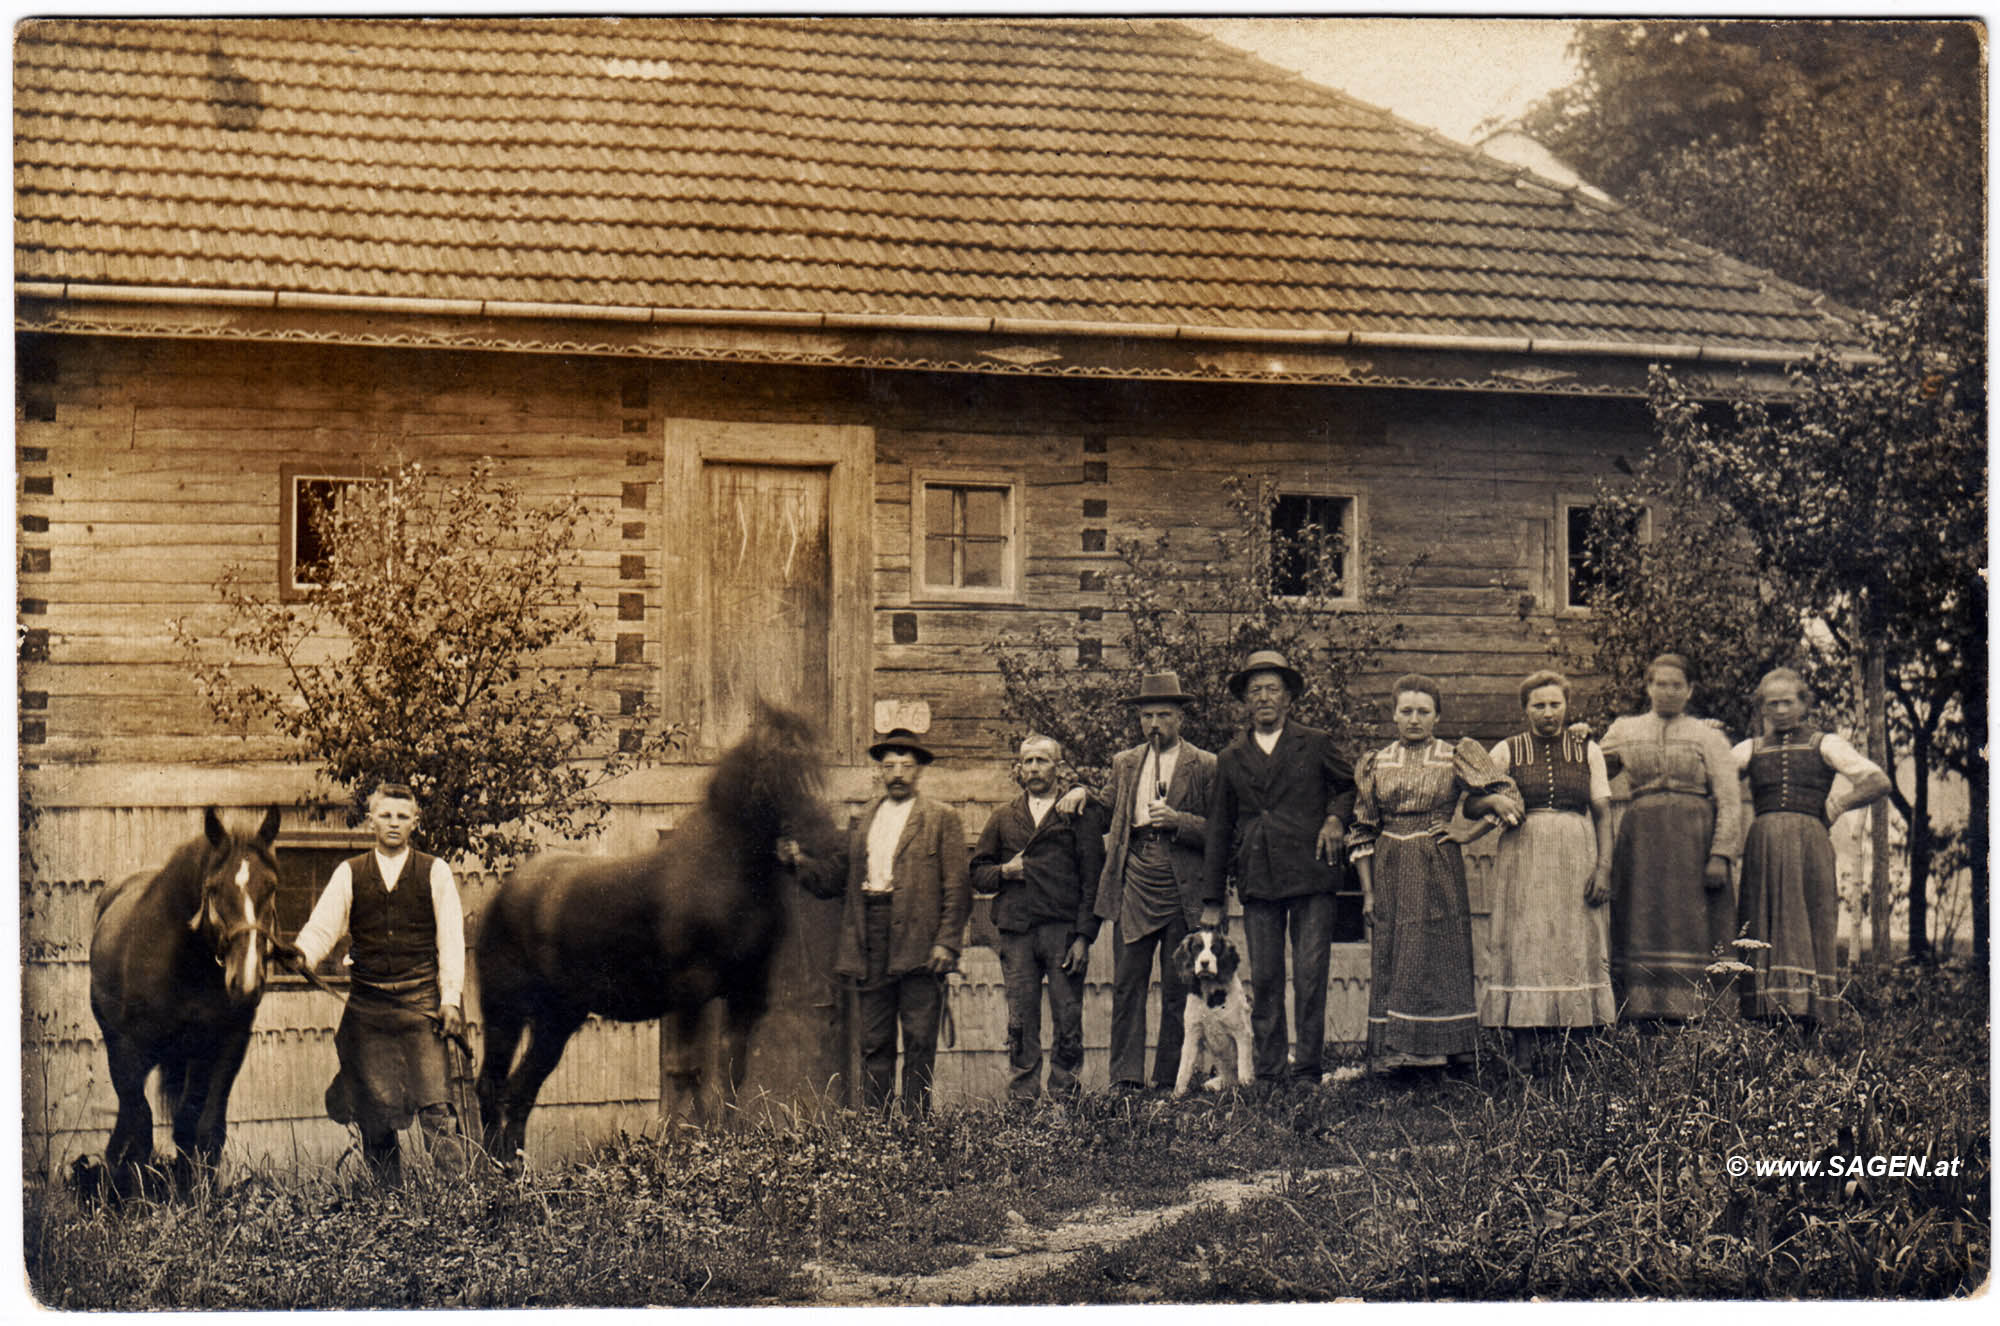 Bauernfamilie vor hölzernem Bauernhaus